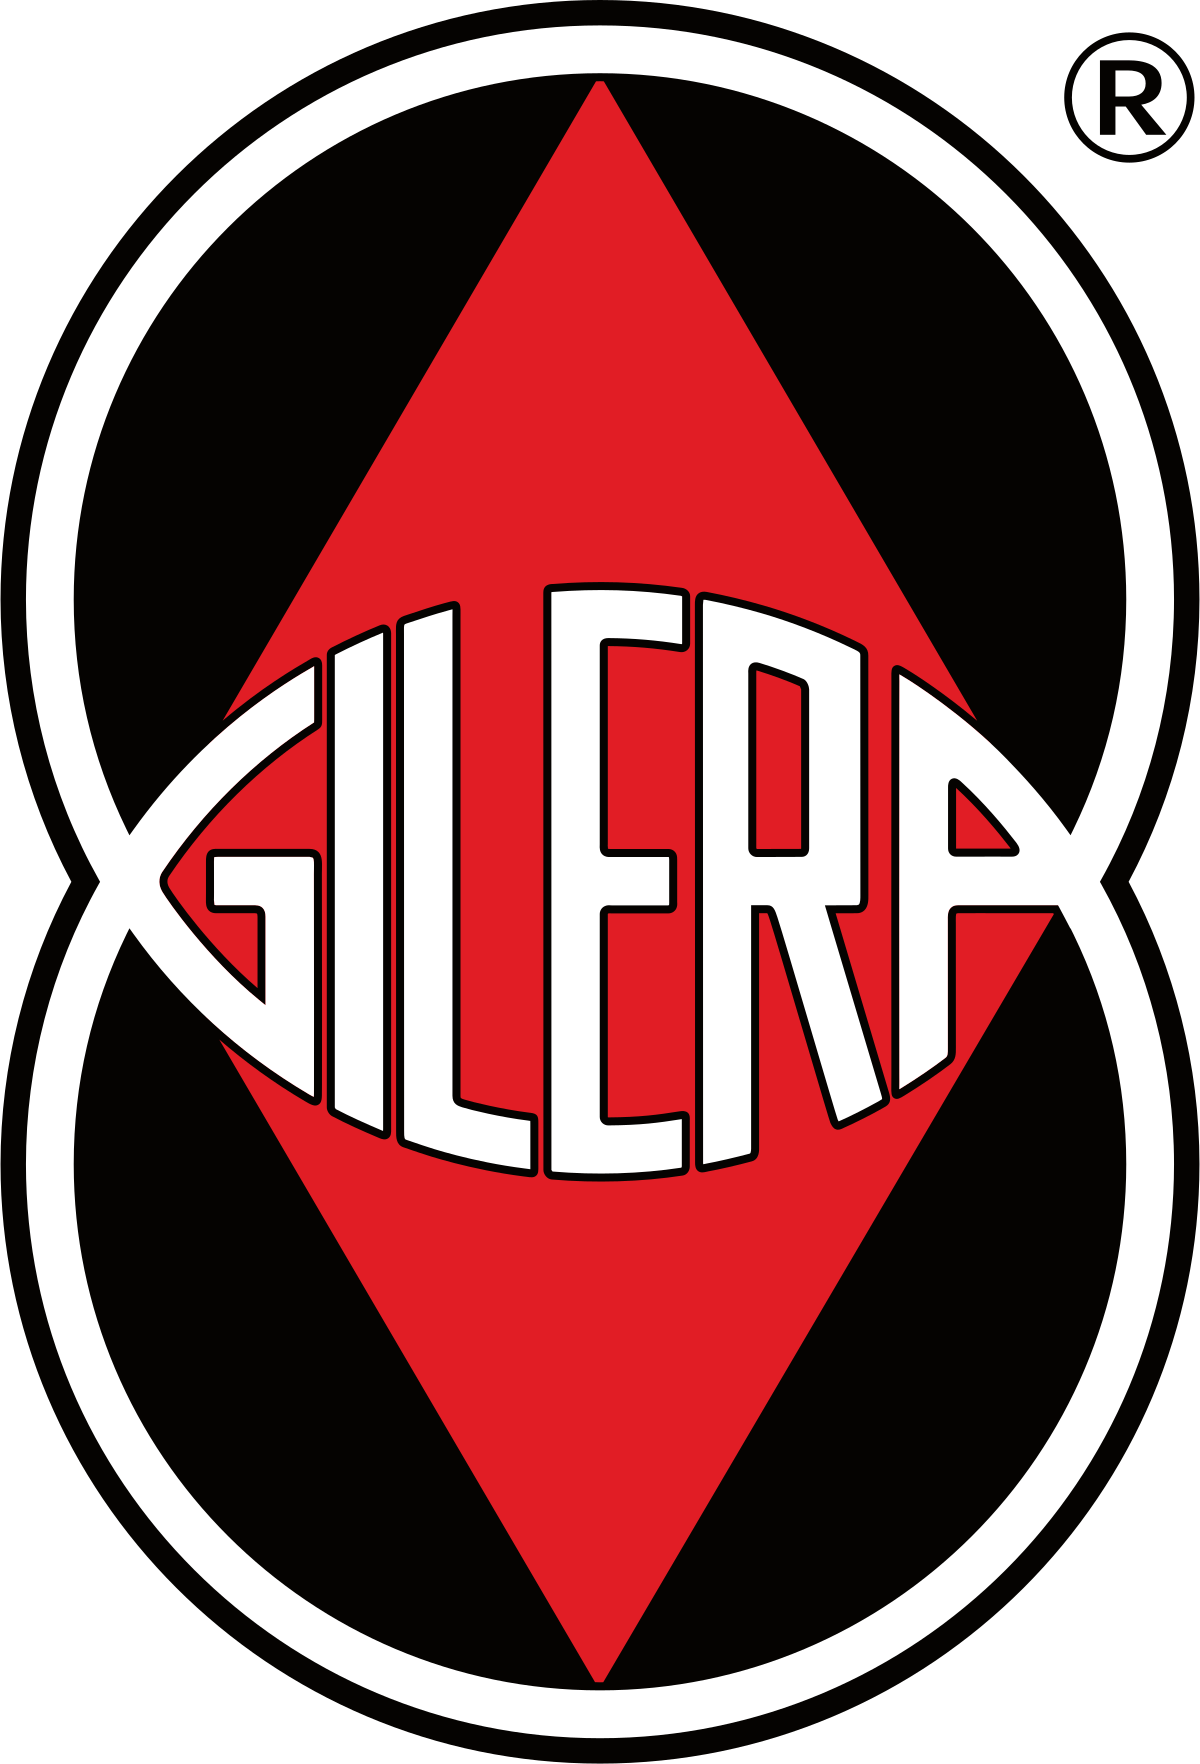 Gilera Runner - Wikipedia